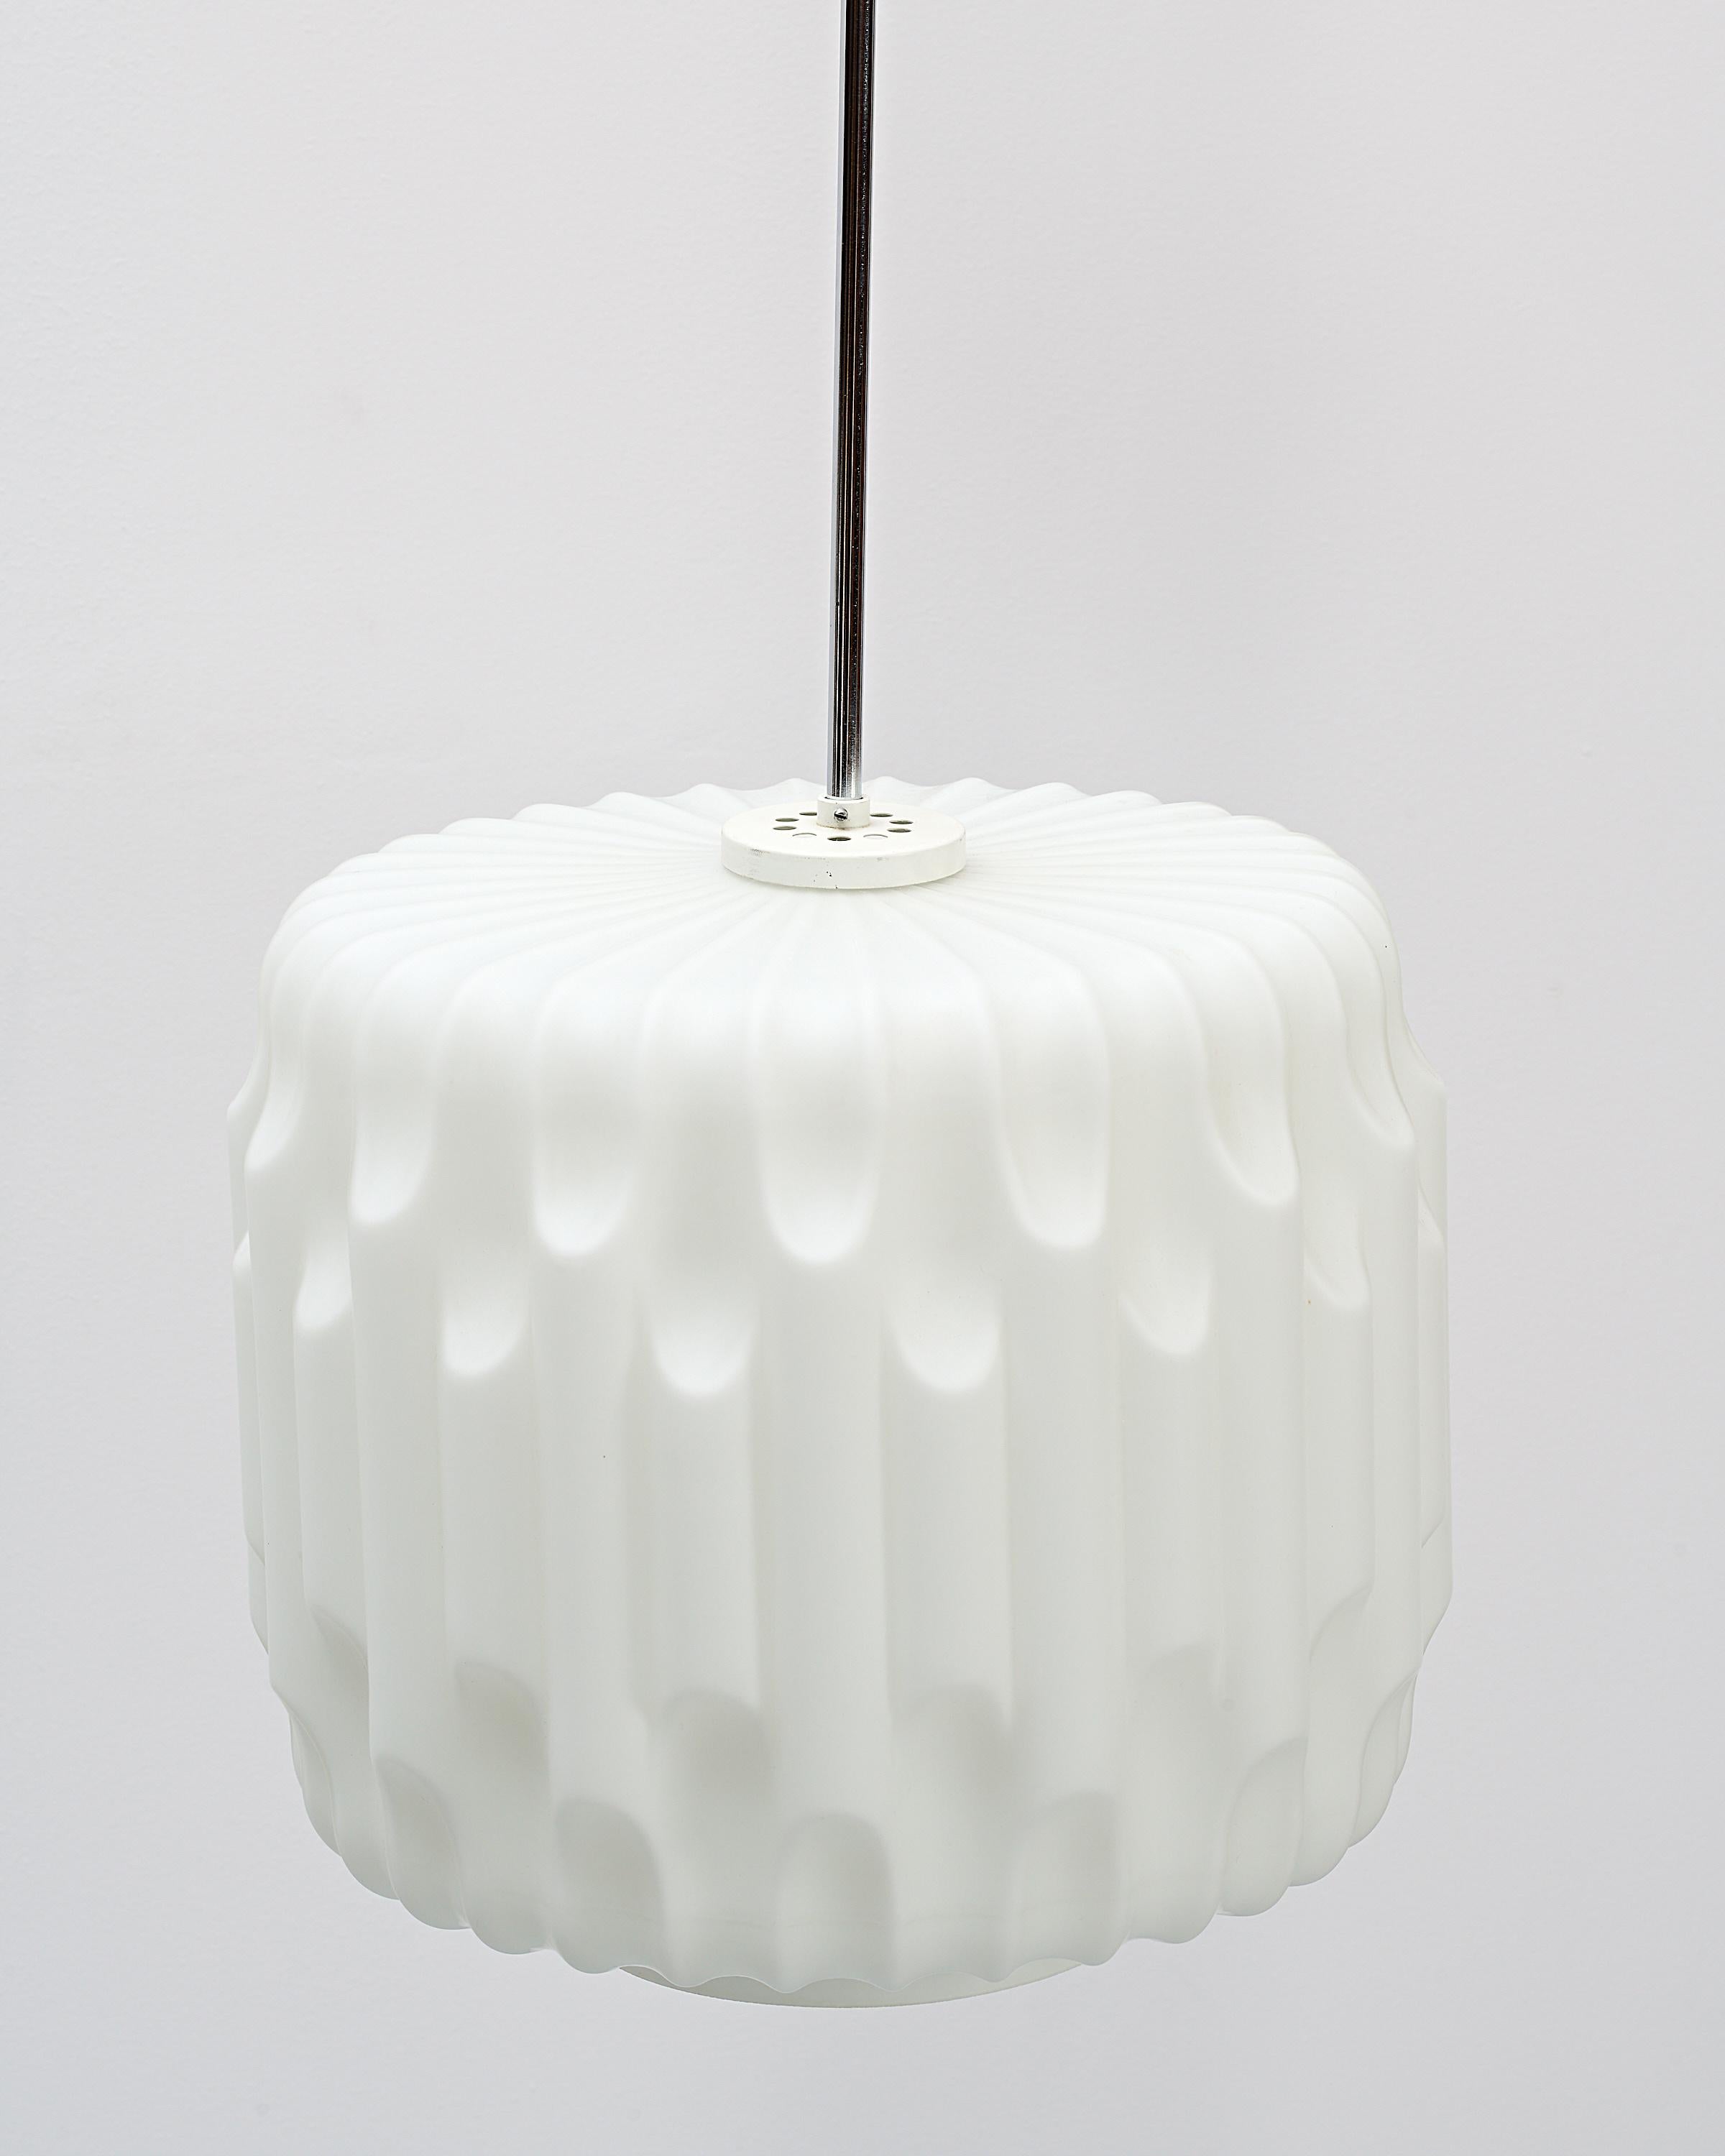 Ein beeindruckender Anhänger aus dickem weißen Opalglas in ausgezeichnetem Zustand. Die einzigartige Struktur des Lampenschirms aus Glas sorgt für einen diffusen Lichteffekt. Die Leuchte hängt an einem sehr langen verchromten Rohr.